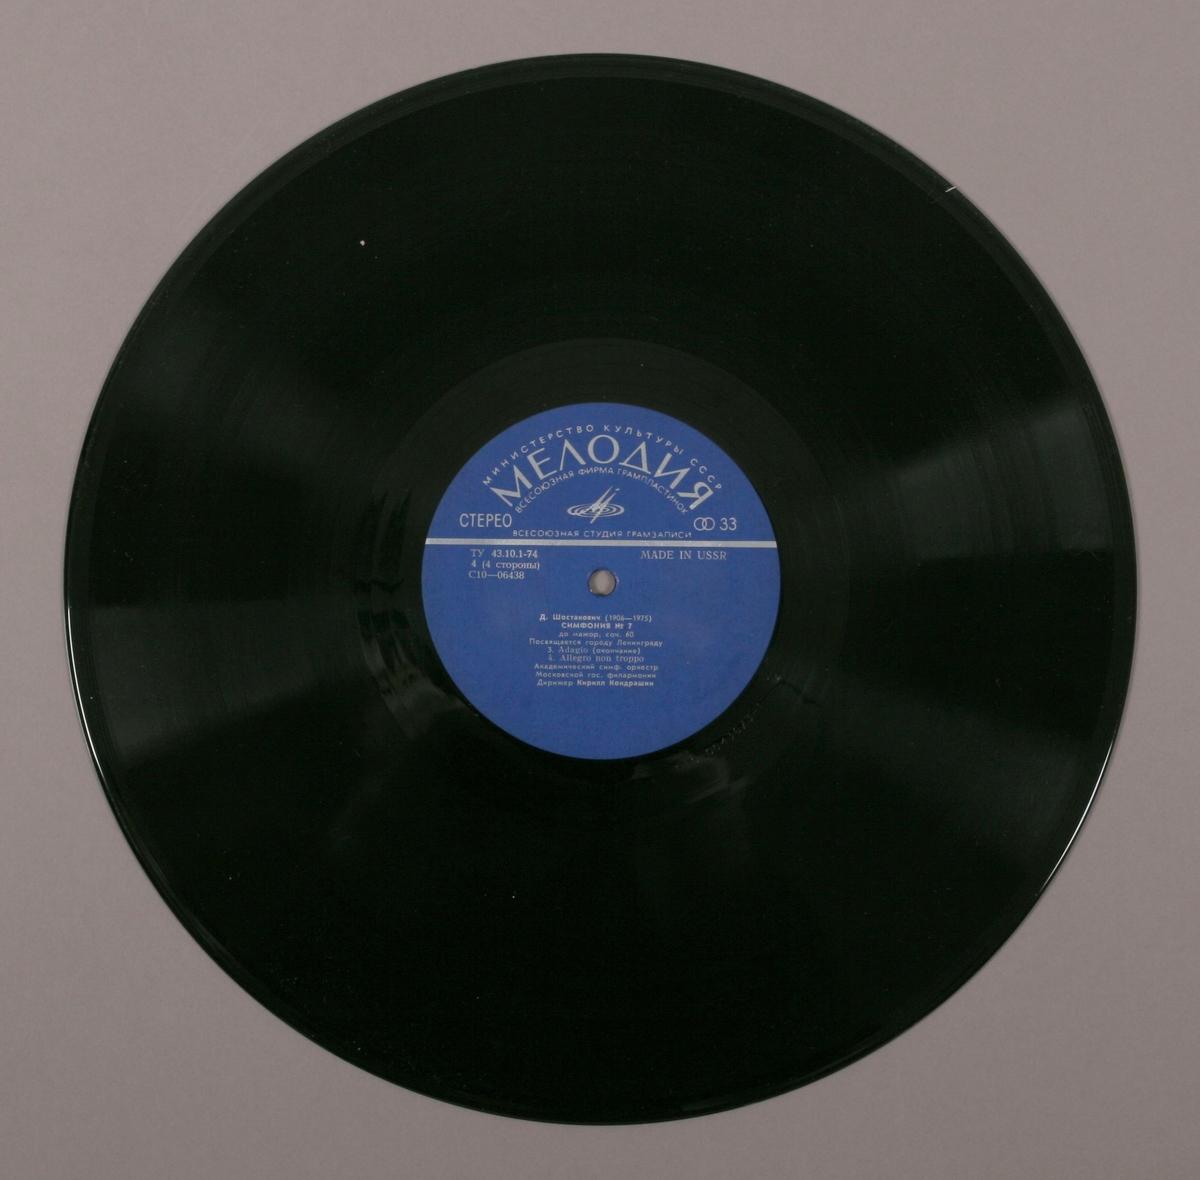 To grammofonplater i svart vinyl og dobbelt plateomslag i papp. Platene ligger i en plastlommer.